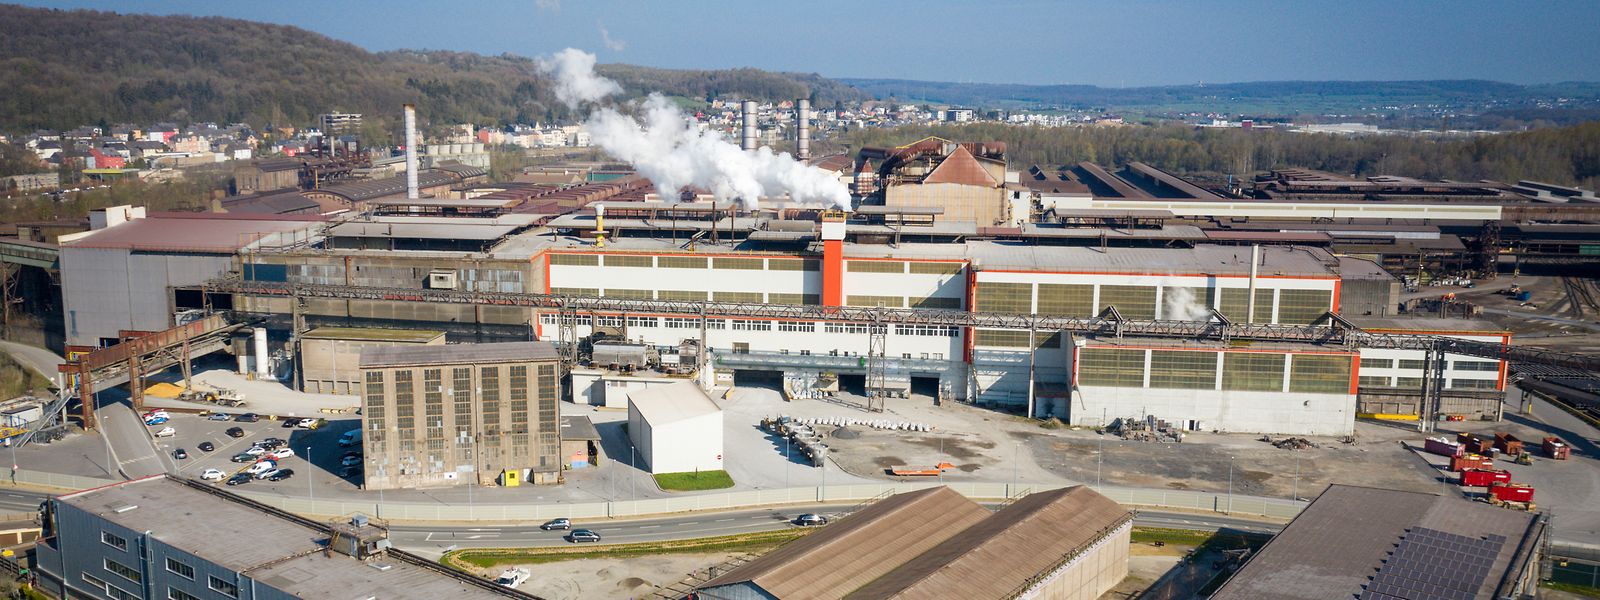 Auf dem Industrieareal von ArcelorMittal in Differdingen läuft die Stahlproduktion noch auf Hochtouren. Fast 40 Millionen Euro hat der Konzern in den zwei vergangenen Jahren in den Standort investiert.